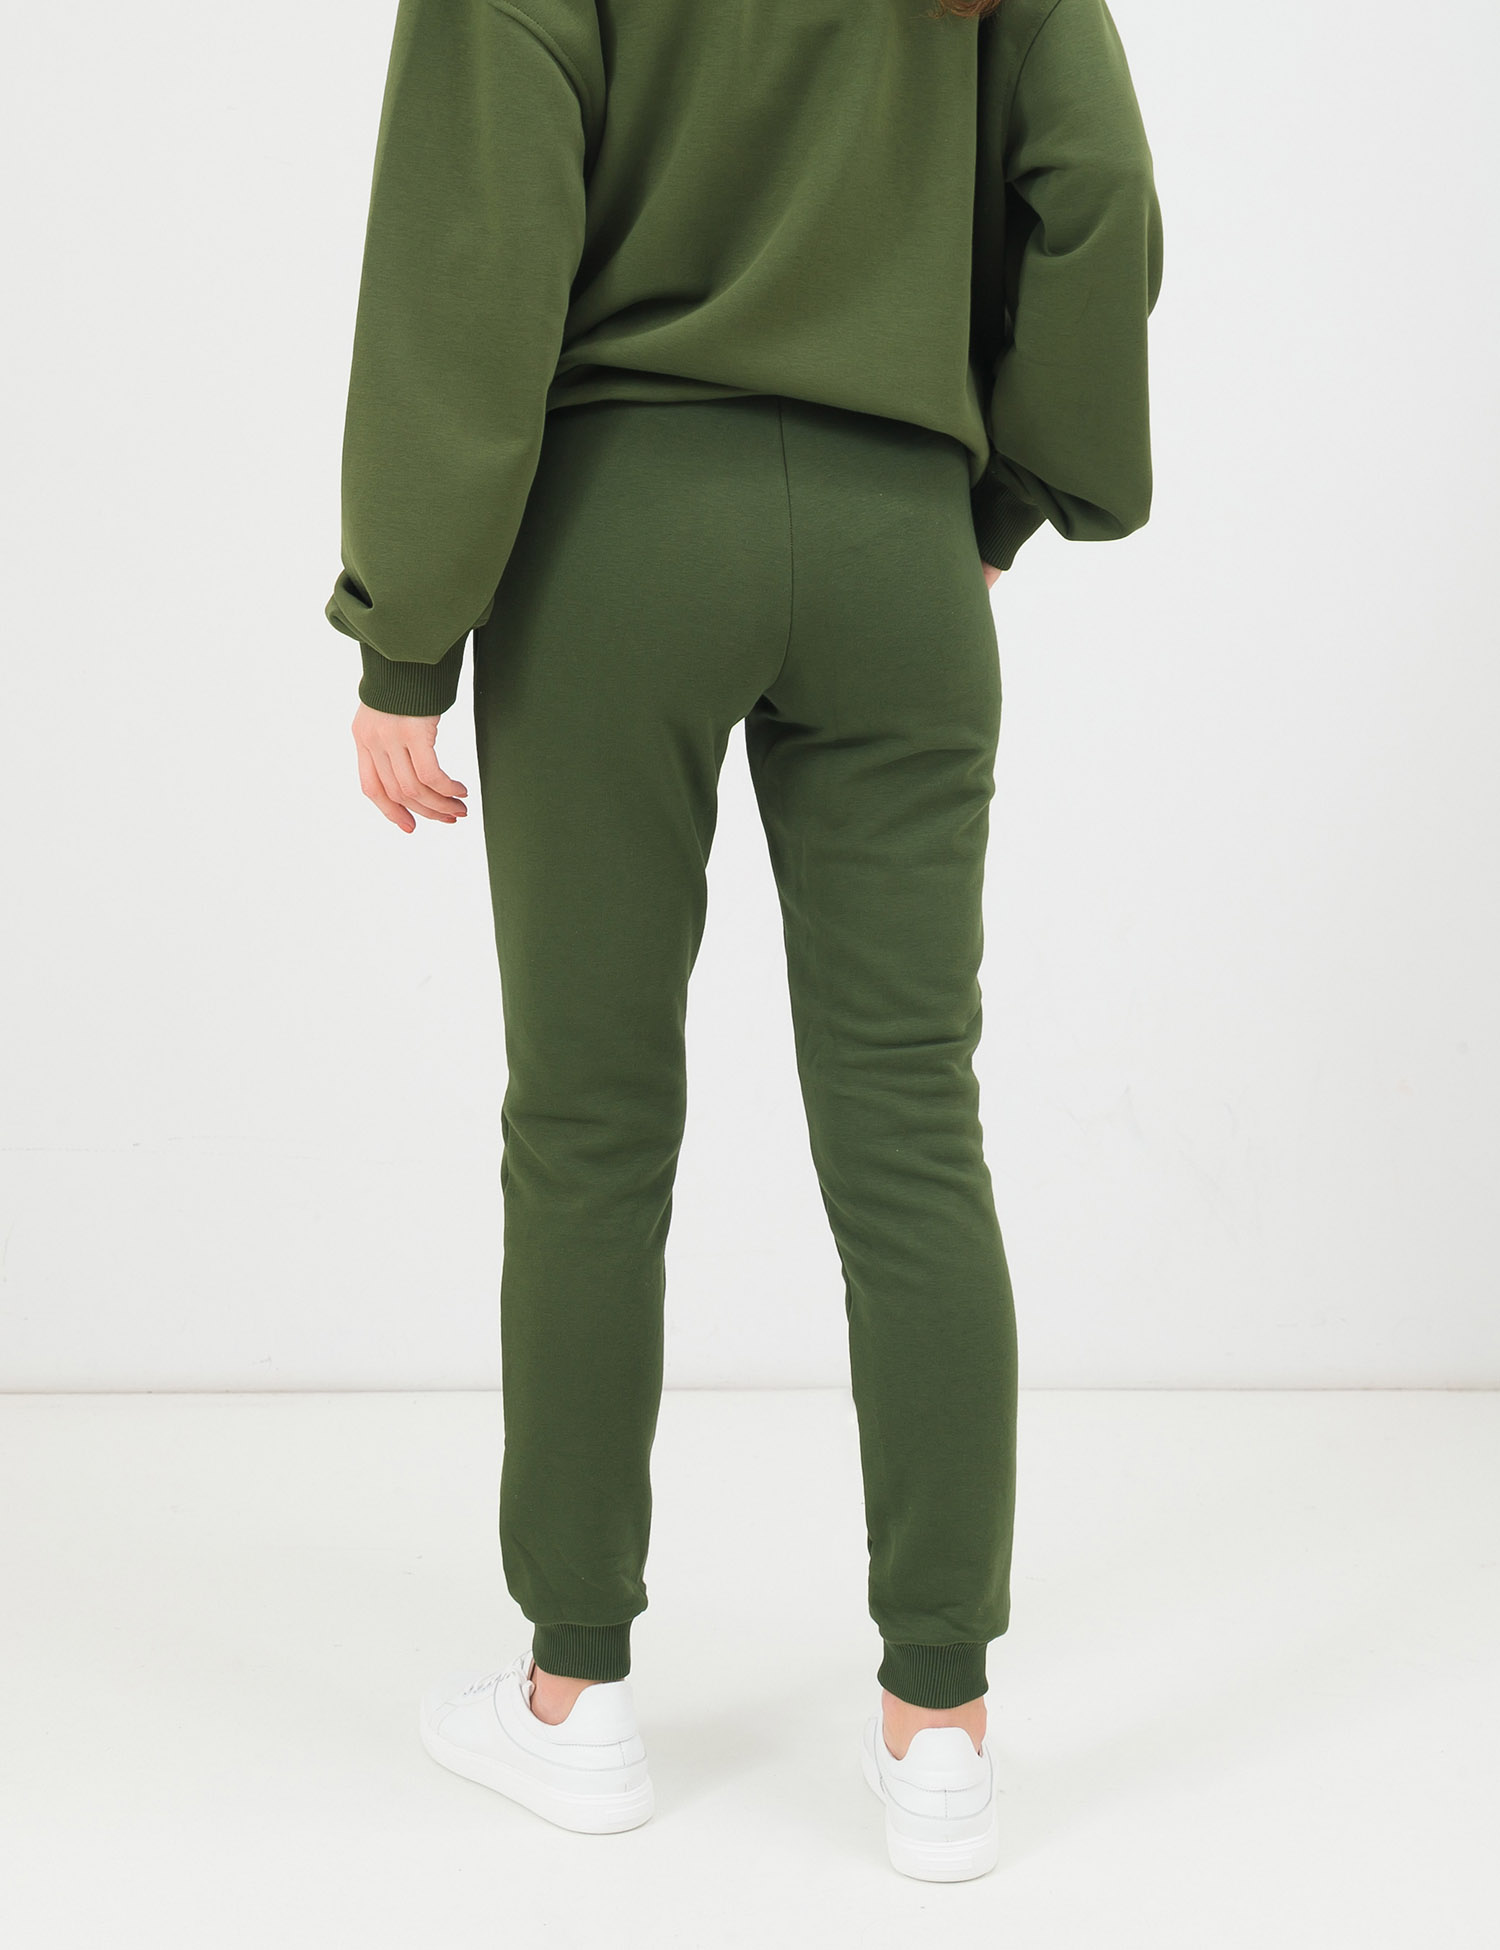 Картинка Жіночі зелені штани